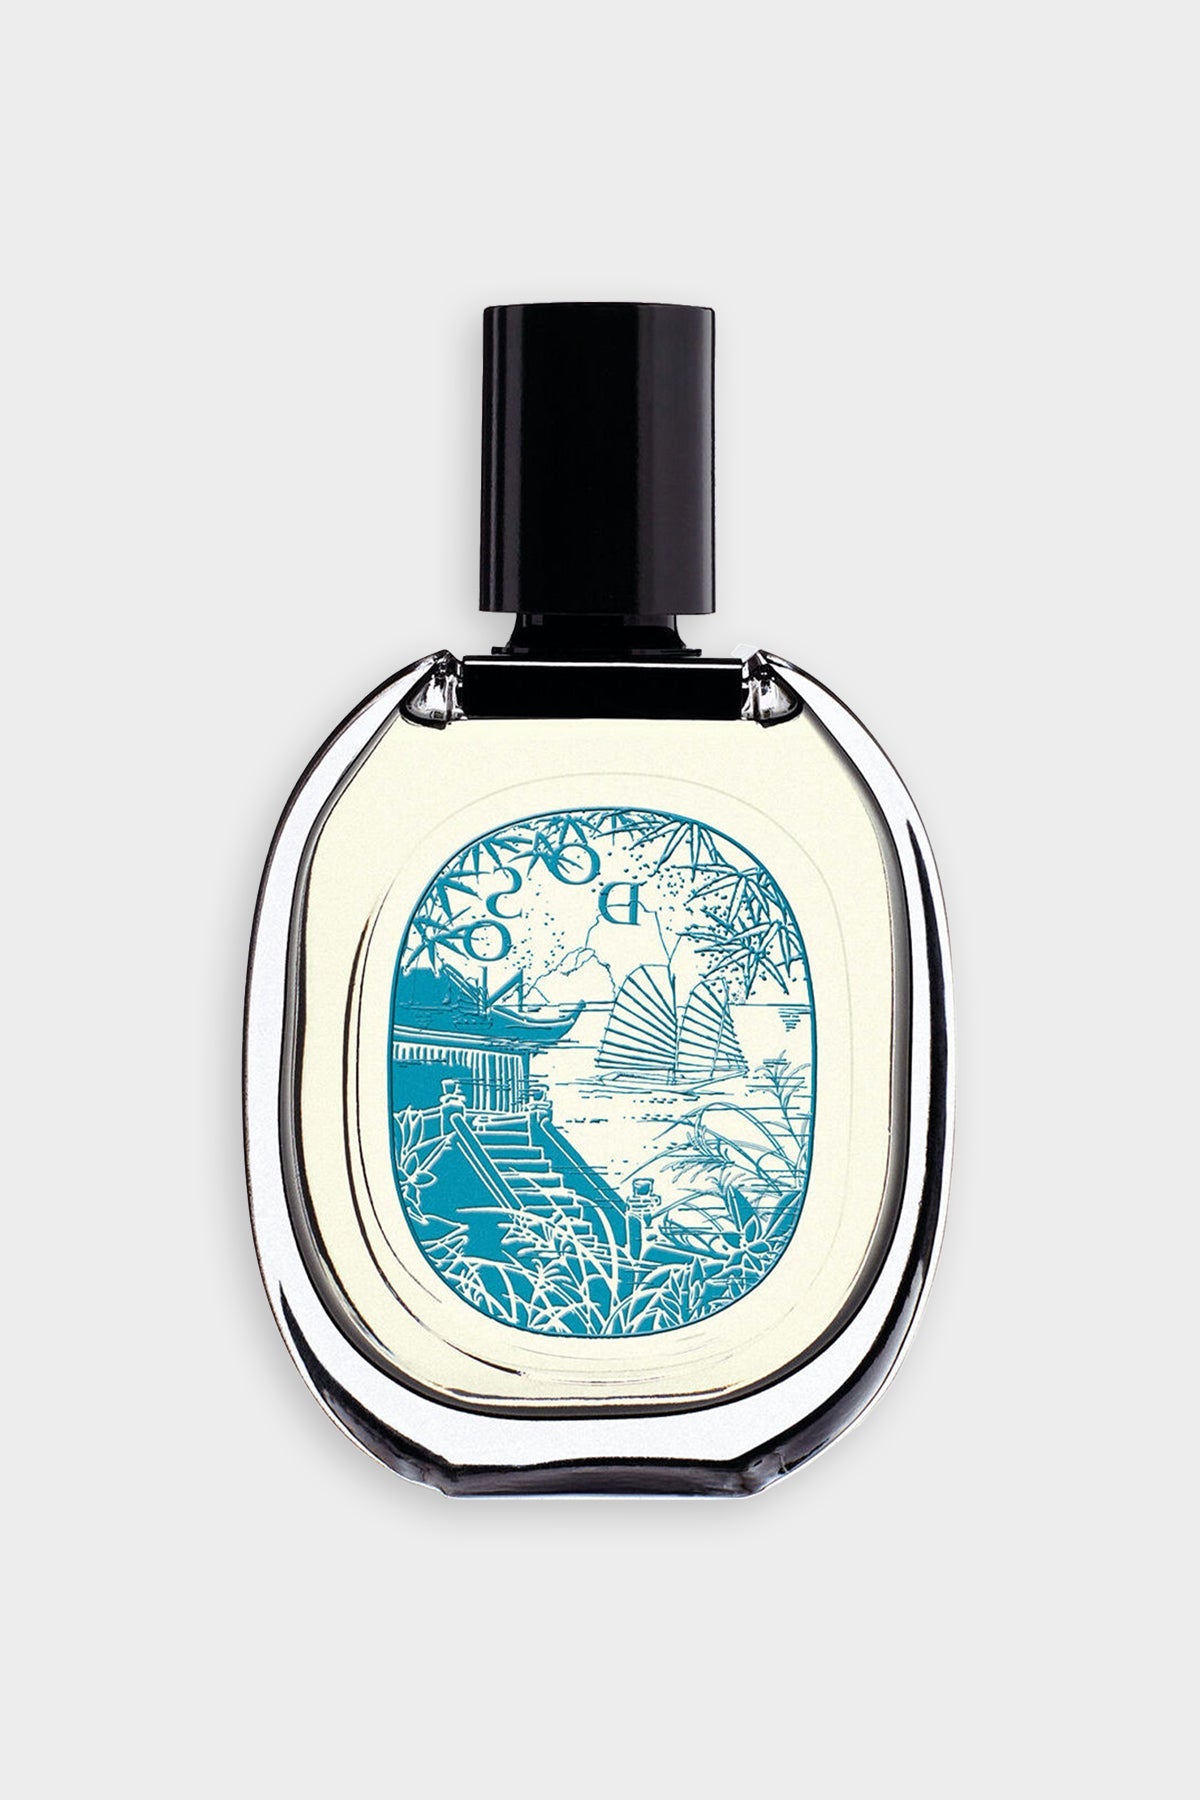 Do Son Eau de Parfum 2.5 fl.oz - Limited Edition - shop-olivia.com